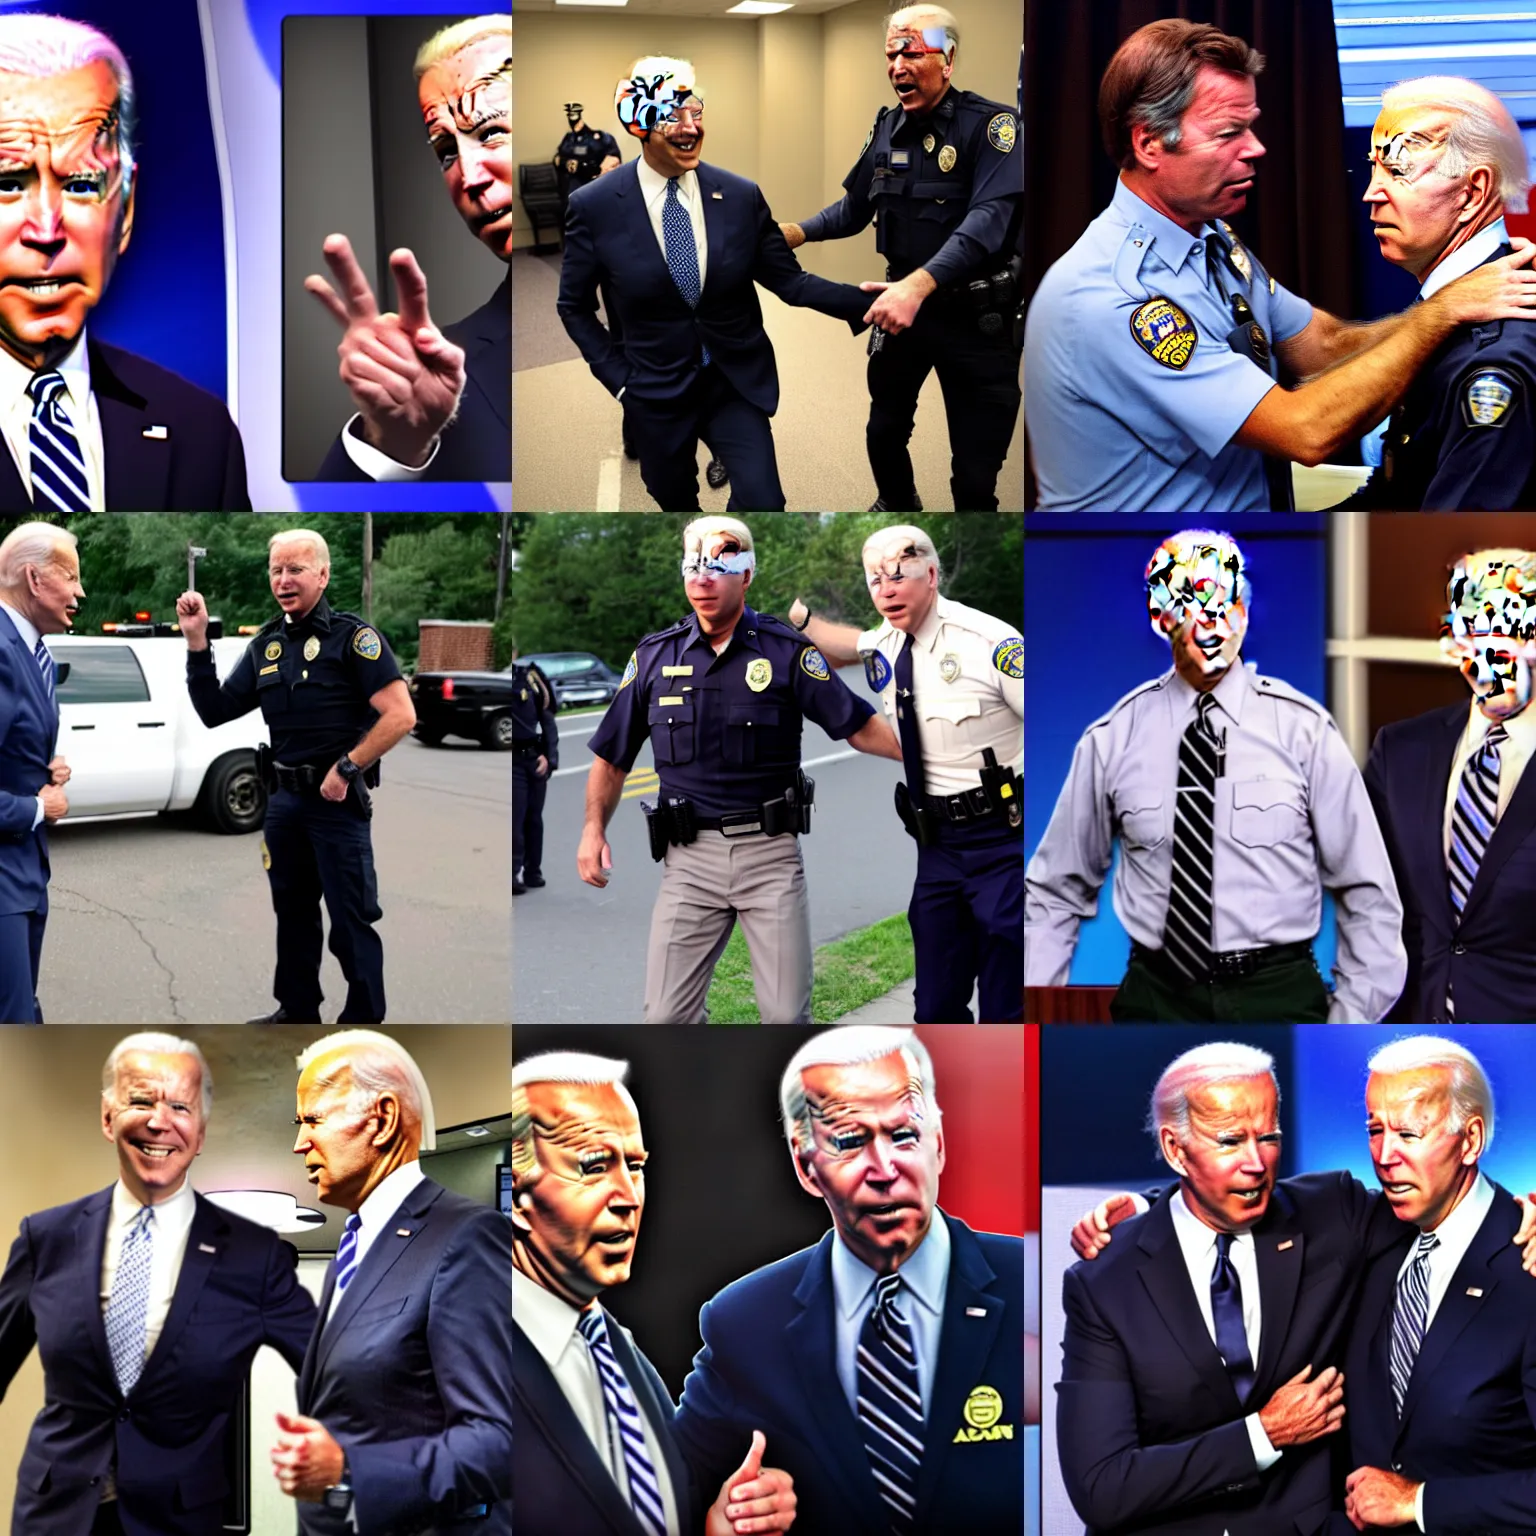 Prompt: Chris Hansen arresting Joe Biden